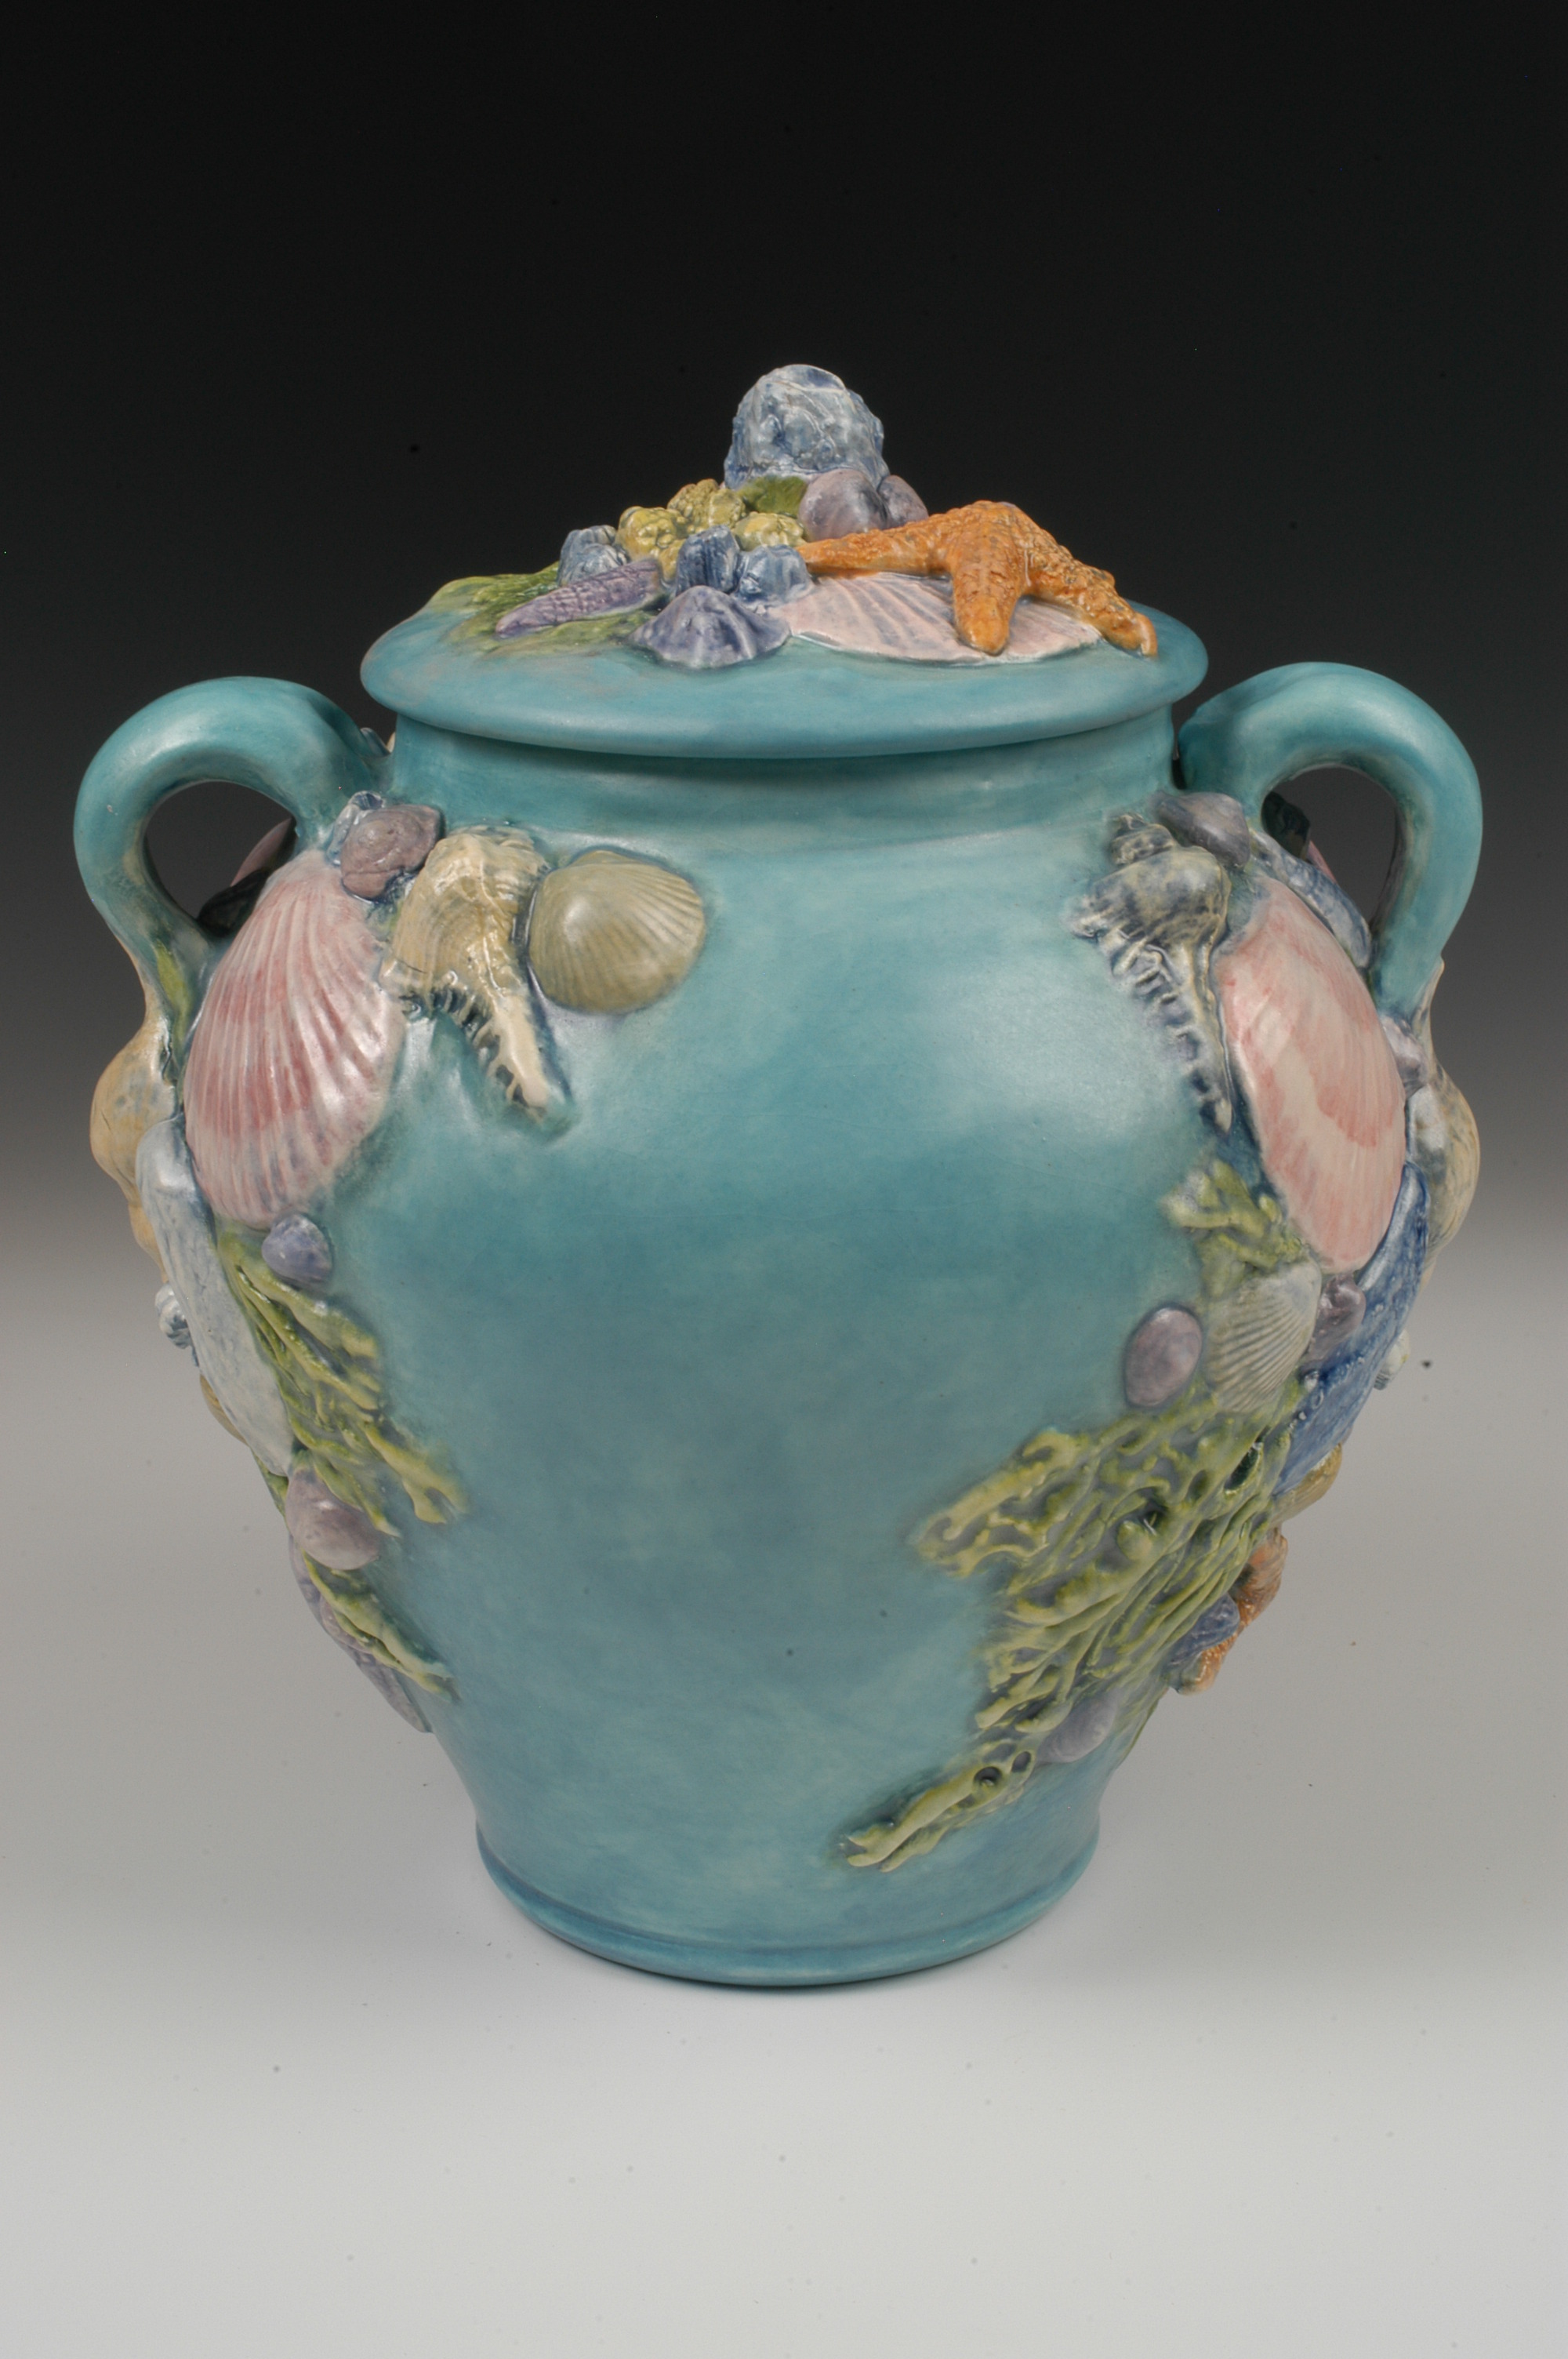 Teal ceramic memorial urn with sea shells